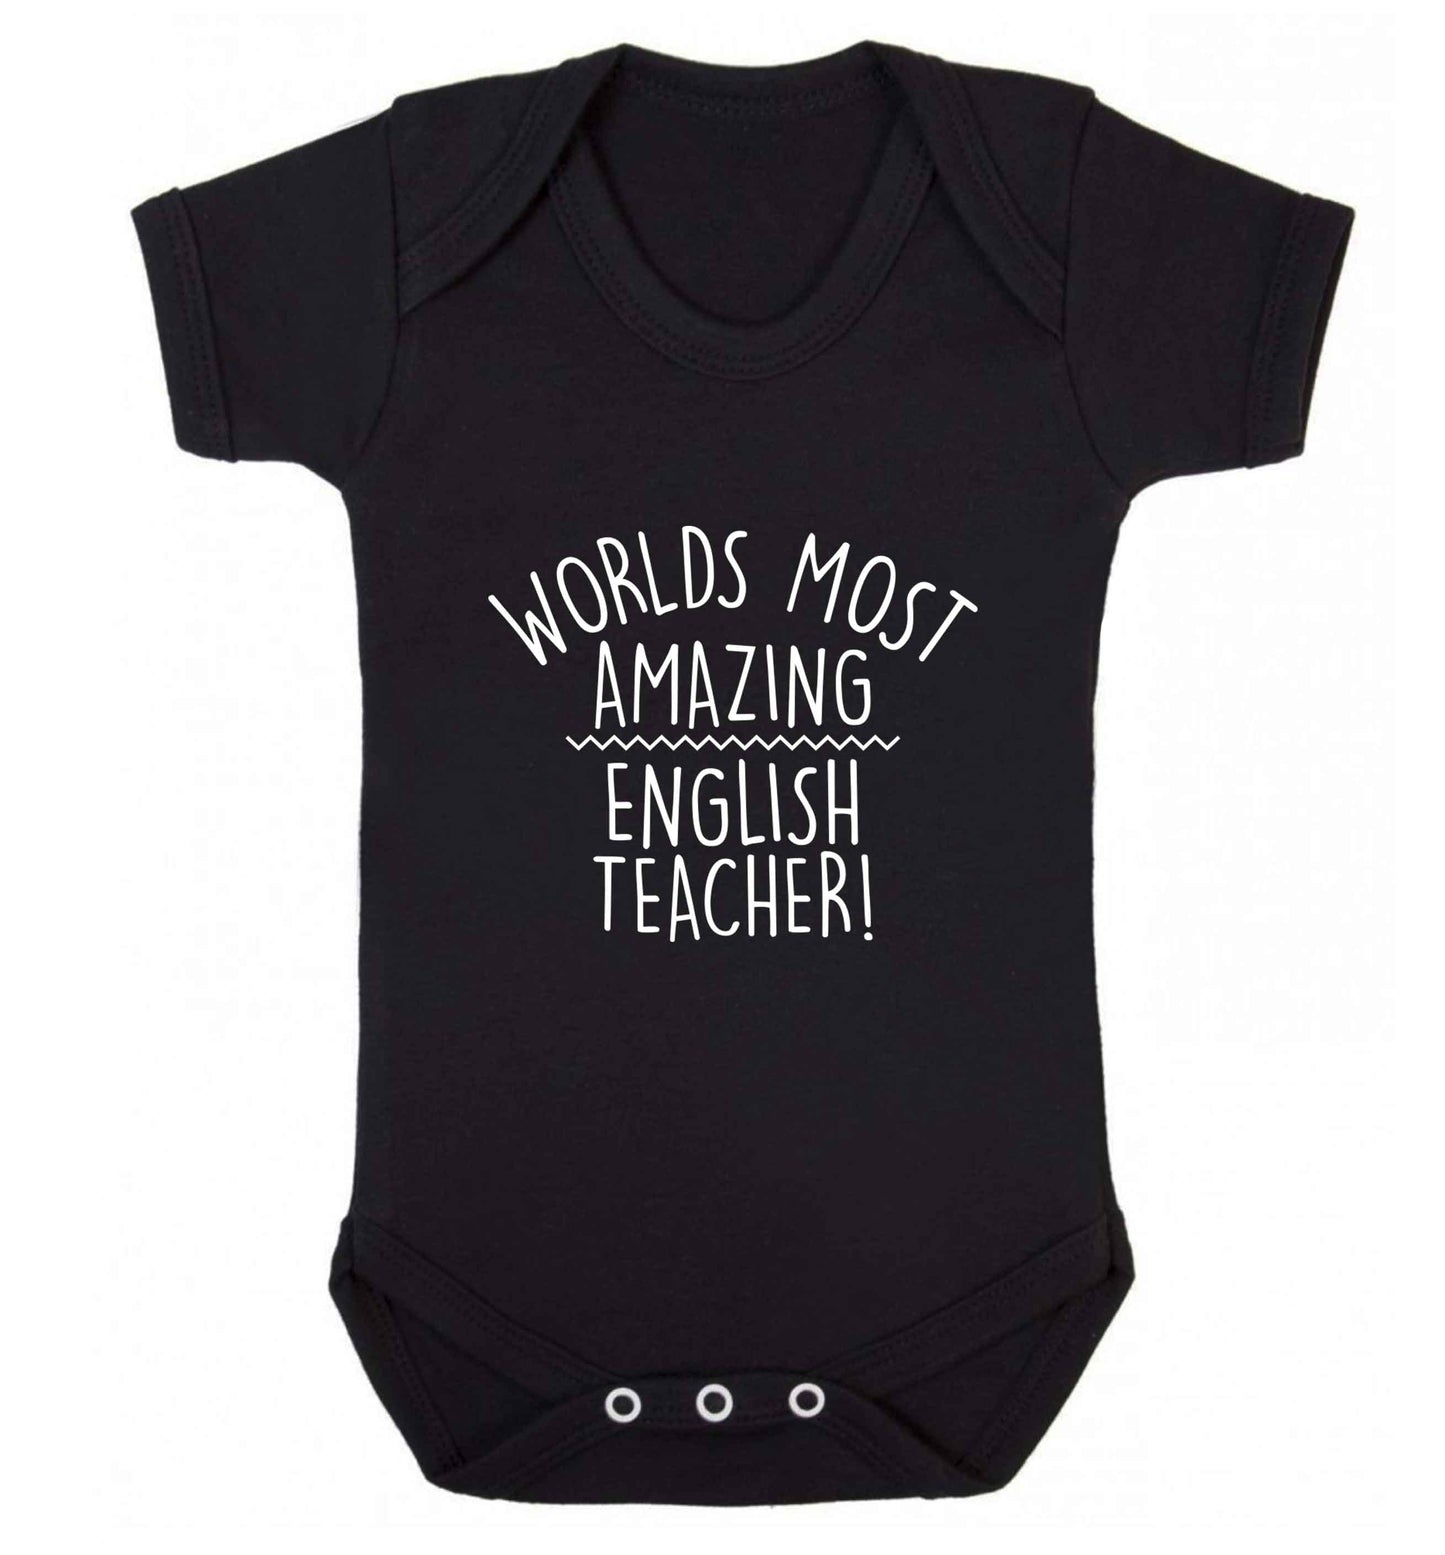 Worlds most amazing English teacher baby vest black 18-24 months